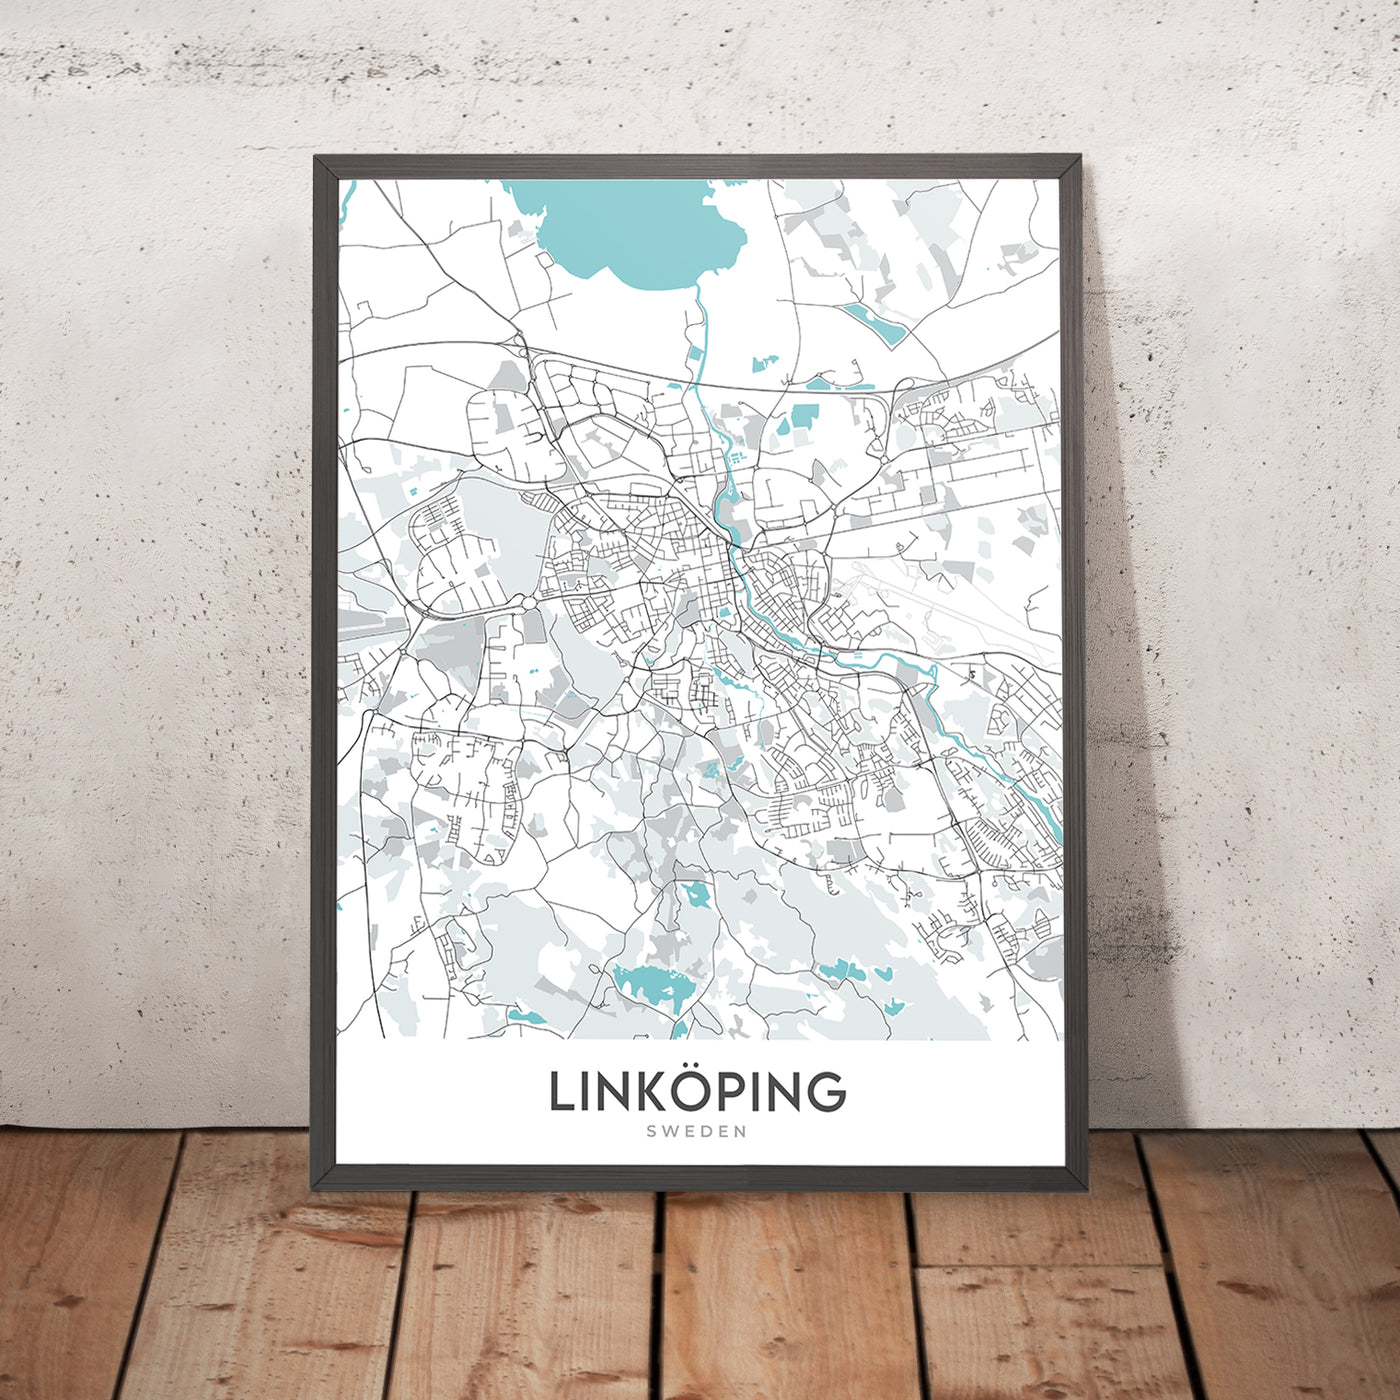 Moderner Stadtplan von Linköping, Schweden: Kathedrale, Schloss, Universität, E4, Stångebro